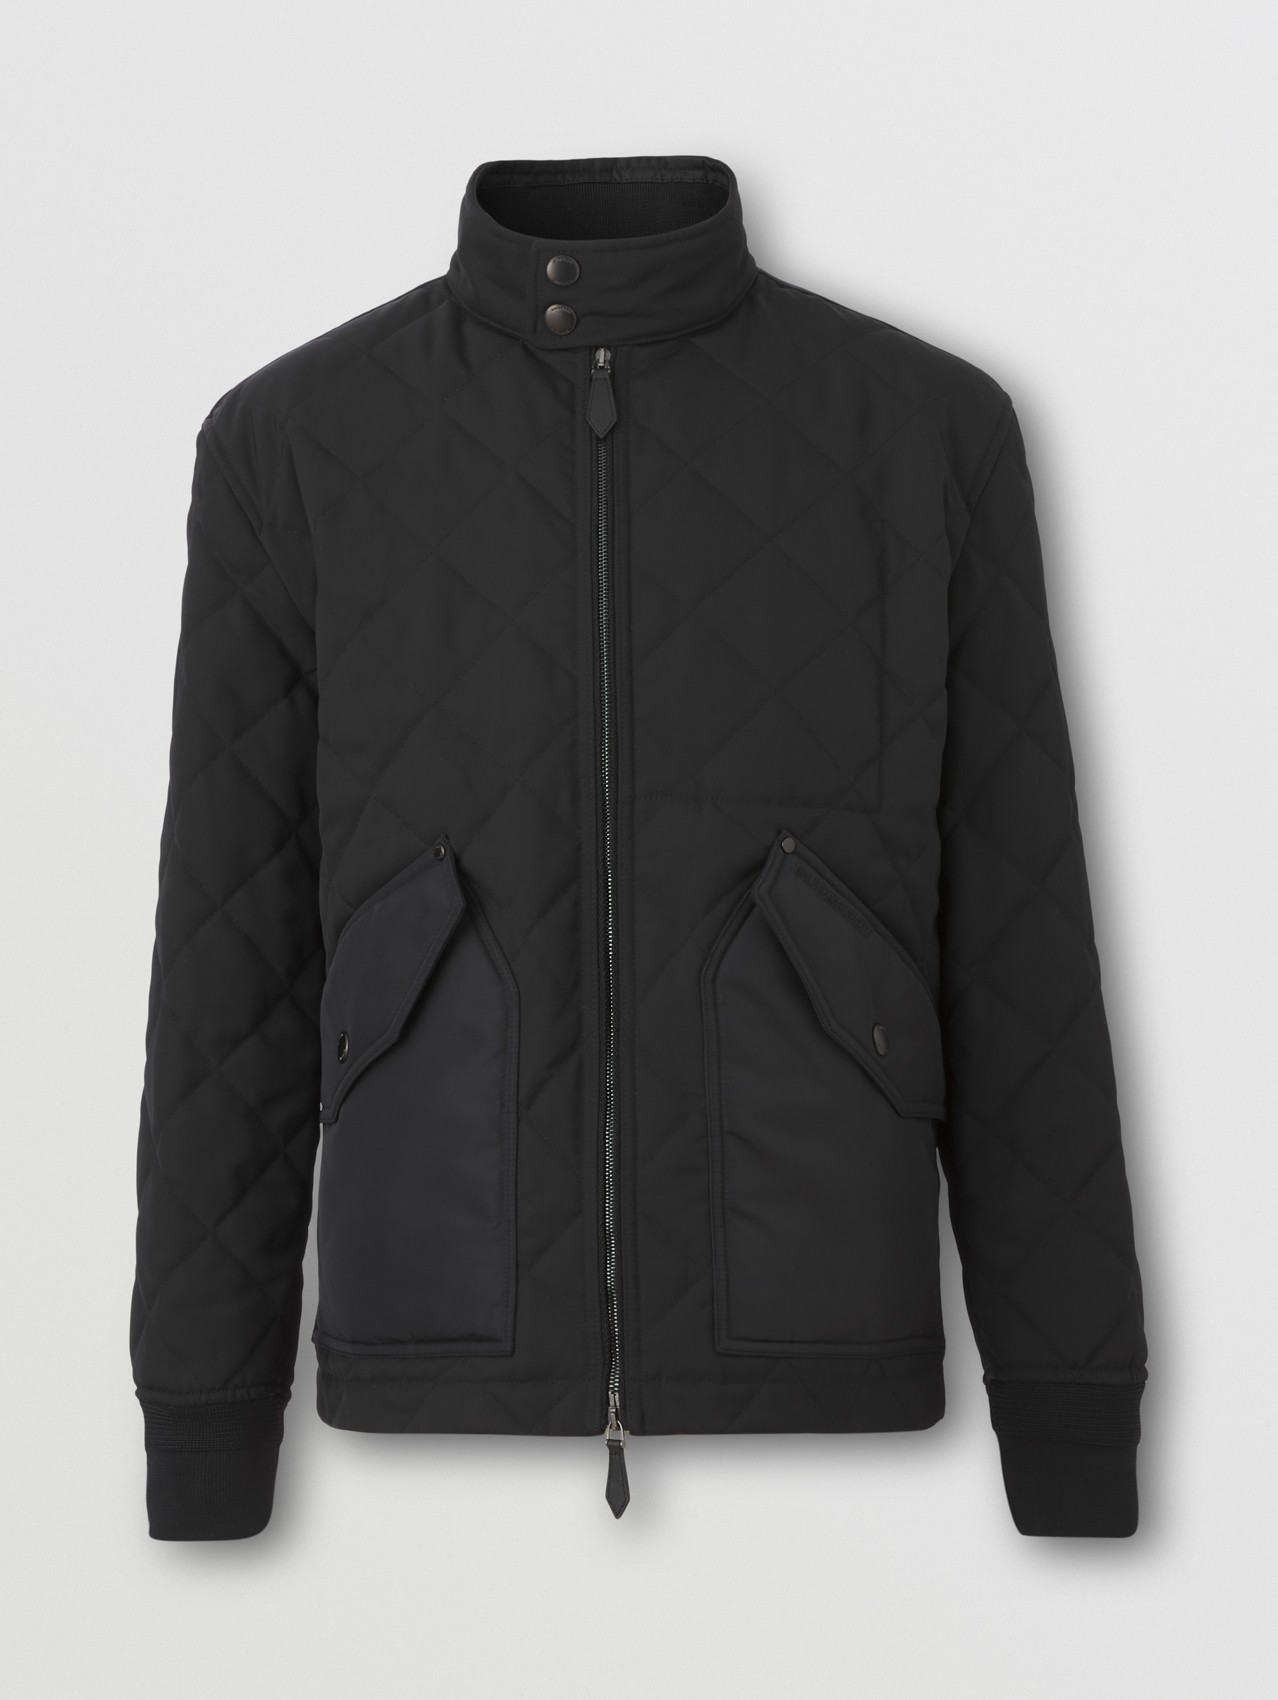 다이아몬드 퀼팅 체온조절 재킷 in 블랙